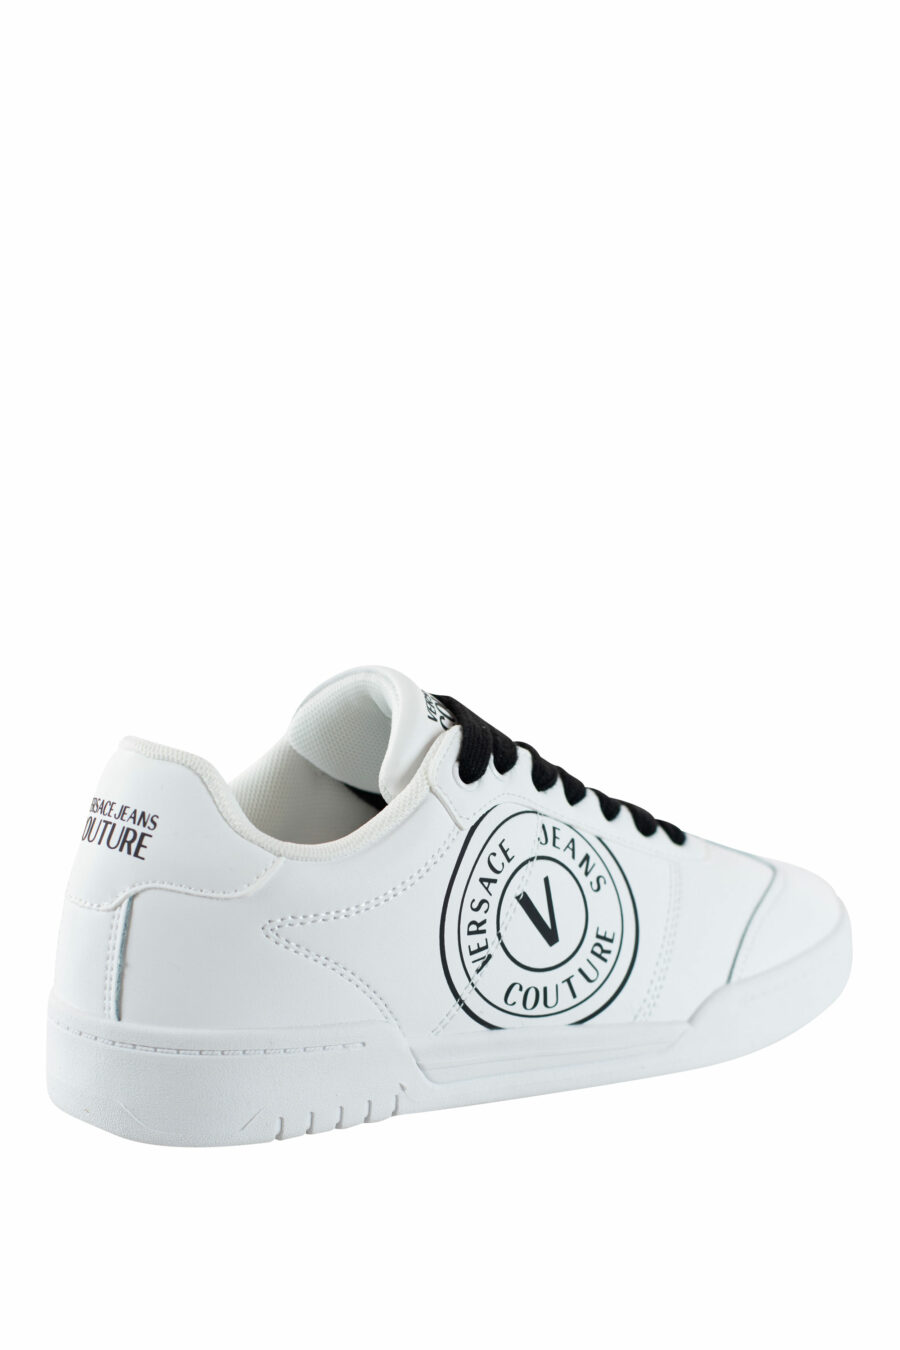 Zapatillas blancas con logo circular y cordones negros - IMG 4488